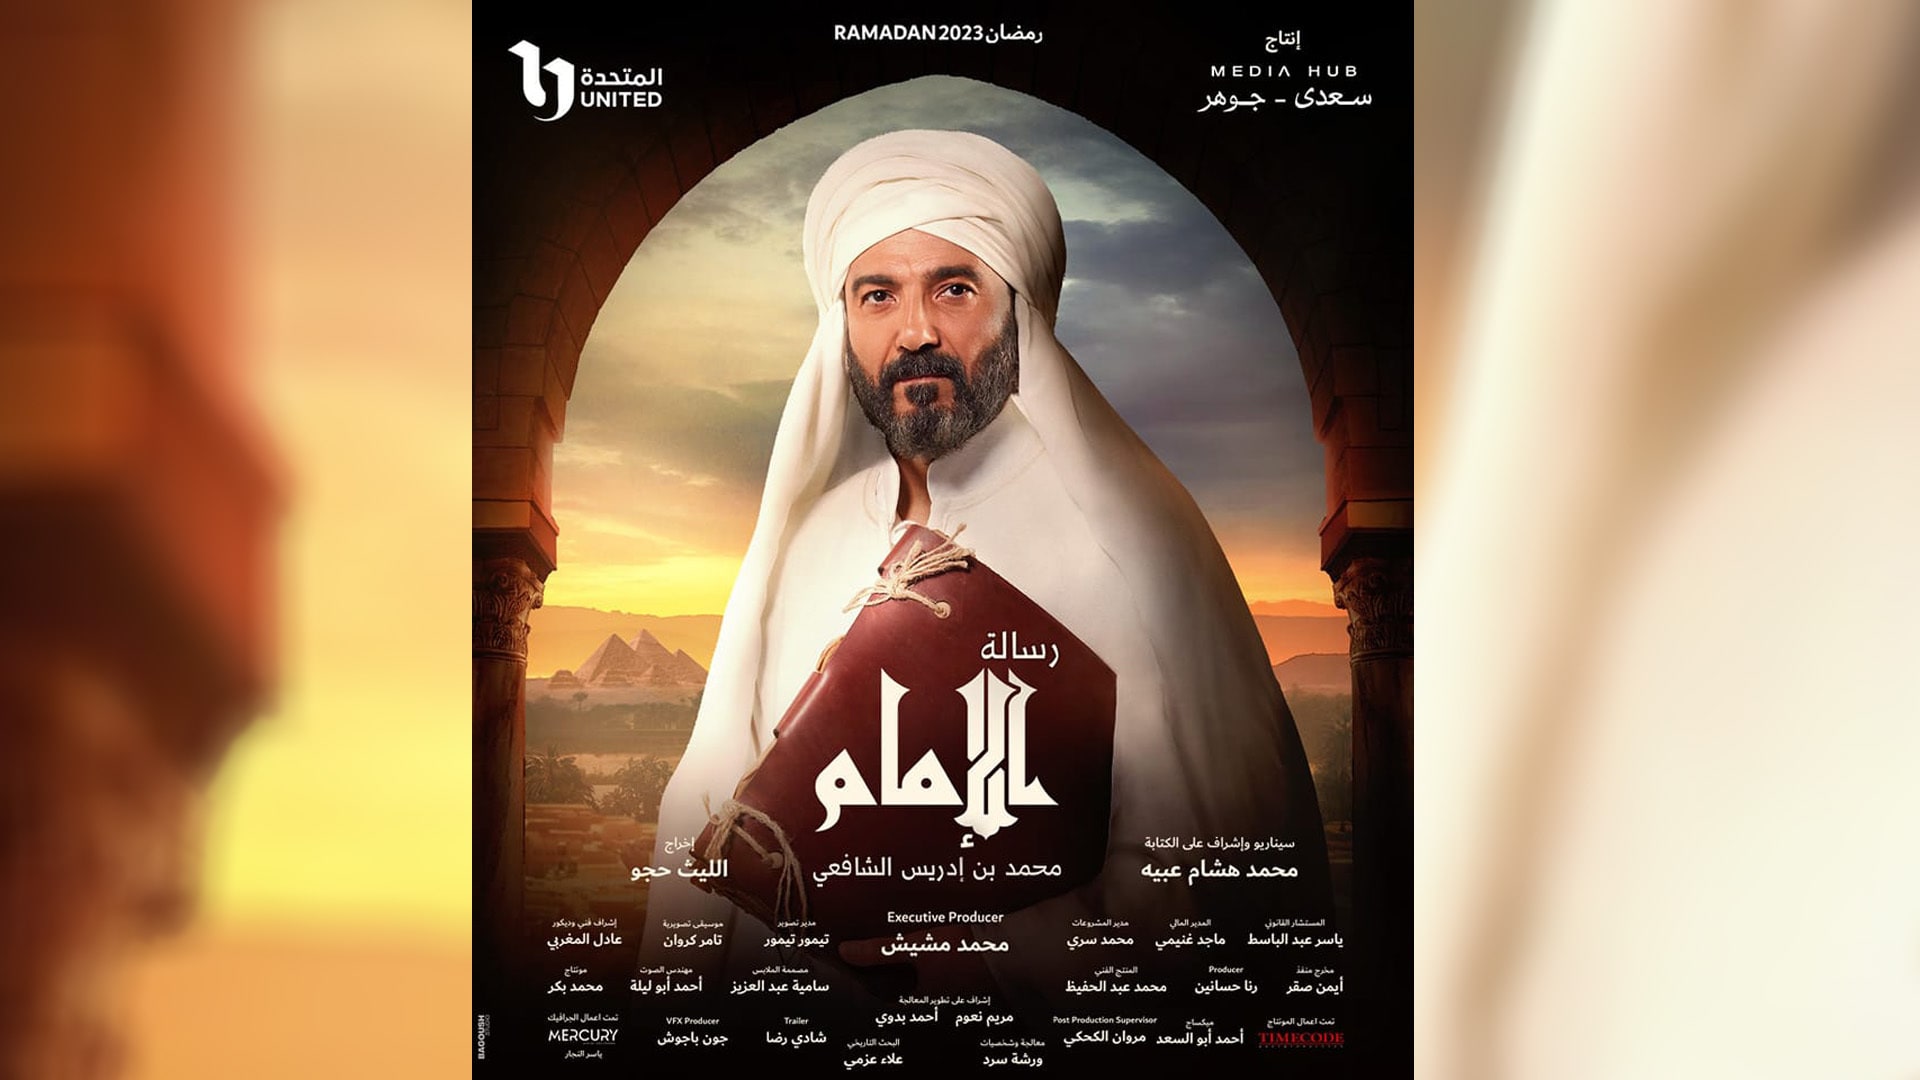 بعد  الإشادة بـ "رسالة الإمام".. صناع المسلسل في مأزق بسبب شاعر سوري